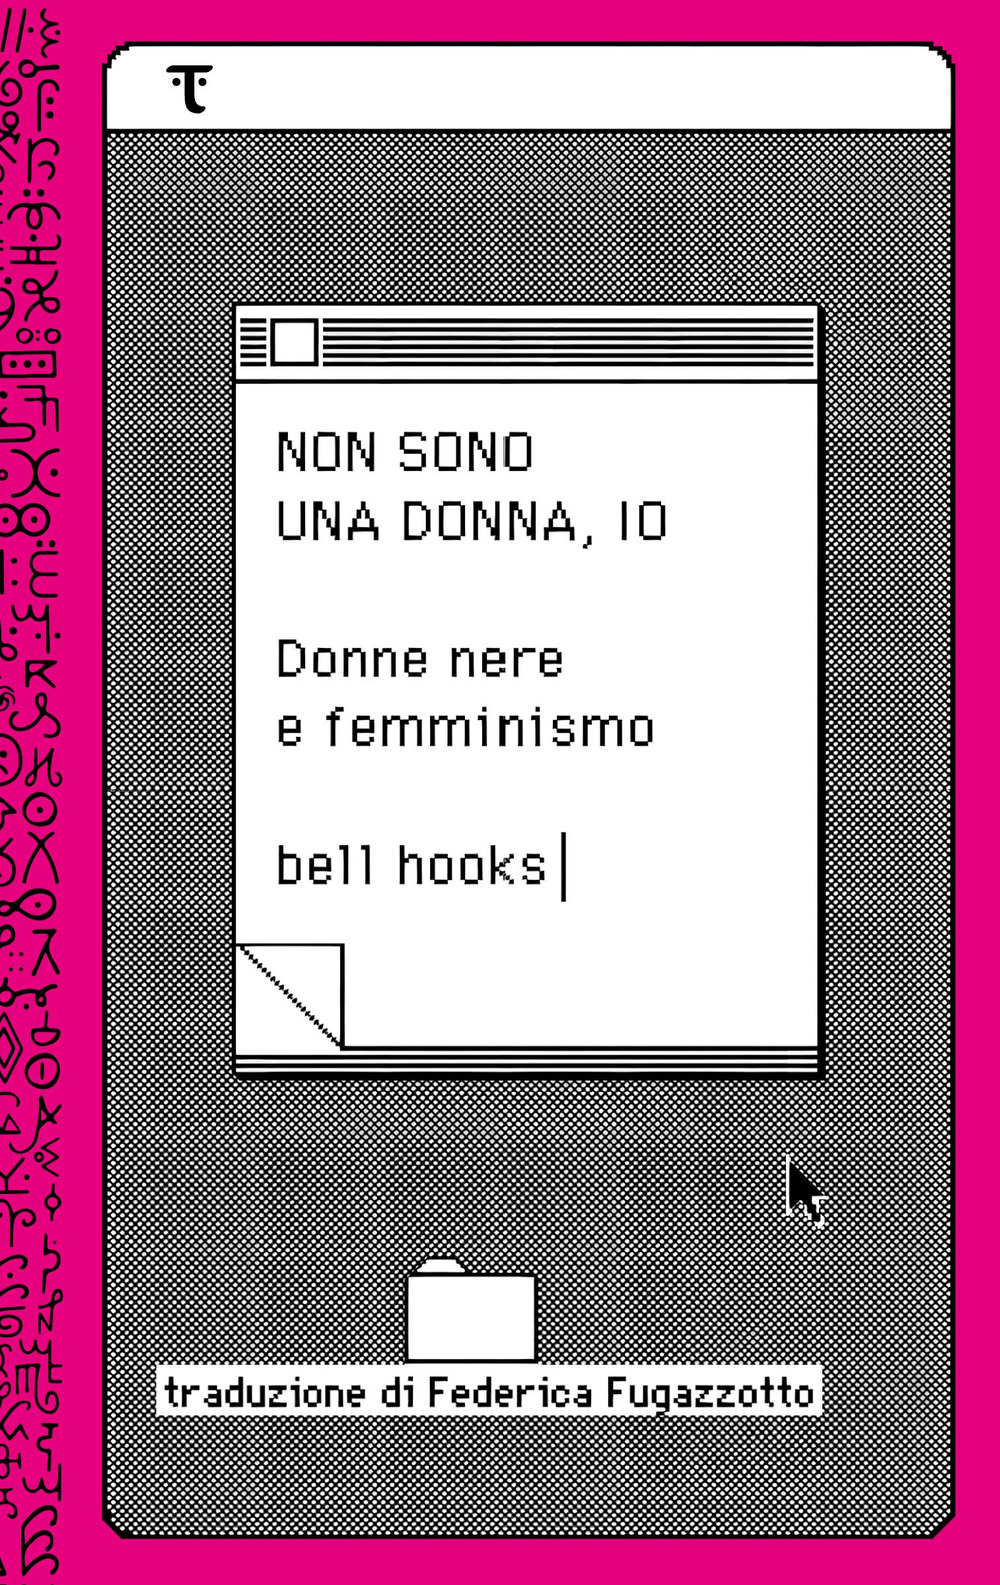 Libri Bell Hooks - Non Sono Una Donna, Io. Donne Nere E Femminismo NUOVO SIGILLATO, EDIZIONE DEL 15/09/2023 SUBITO DISPONIBILE